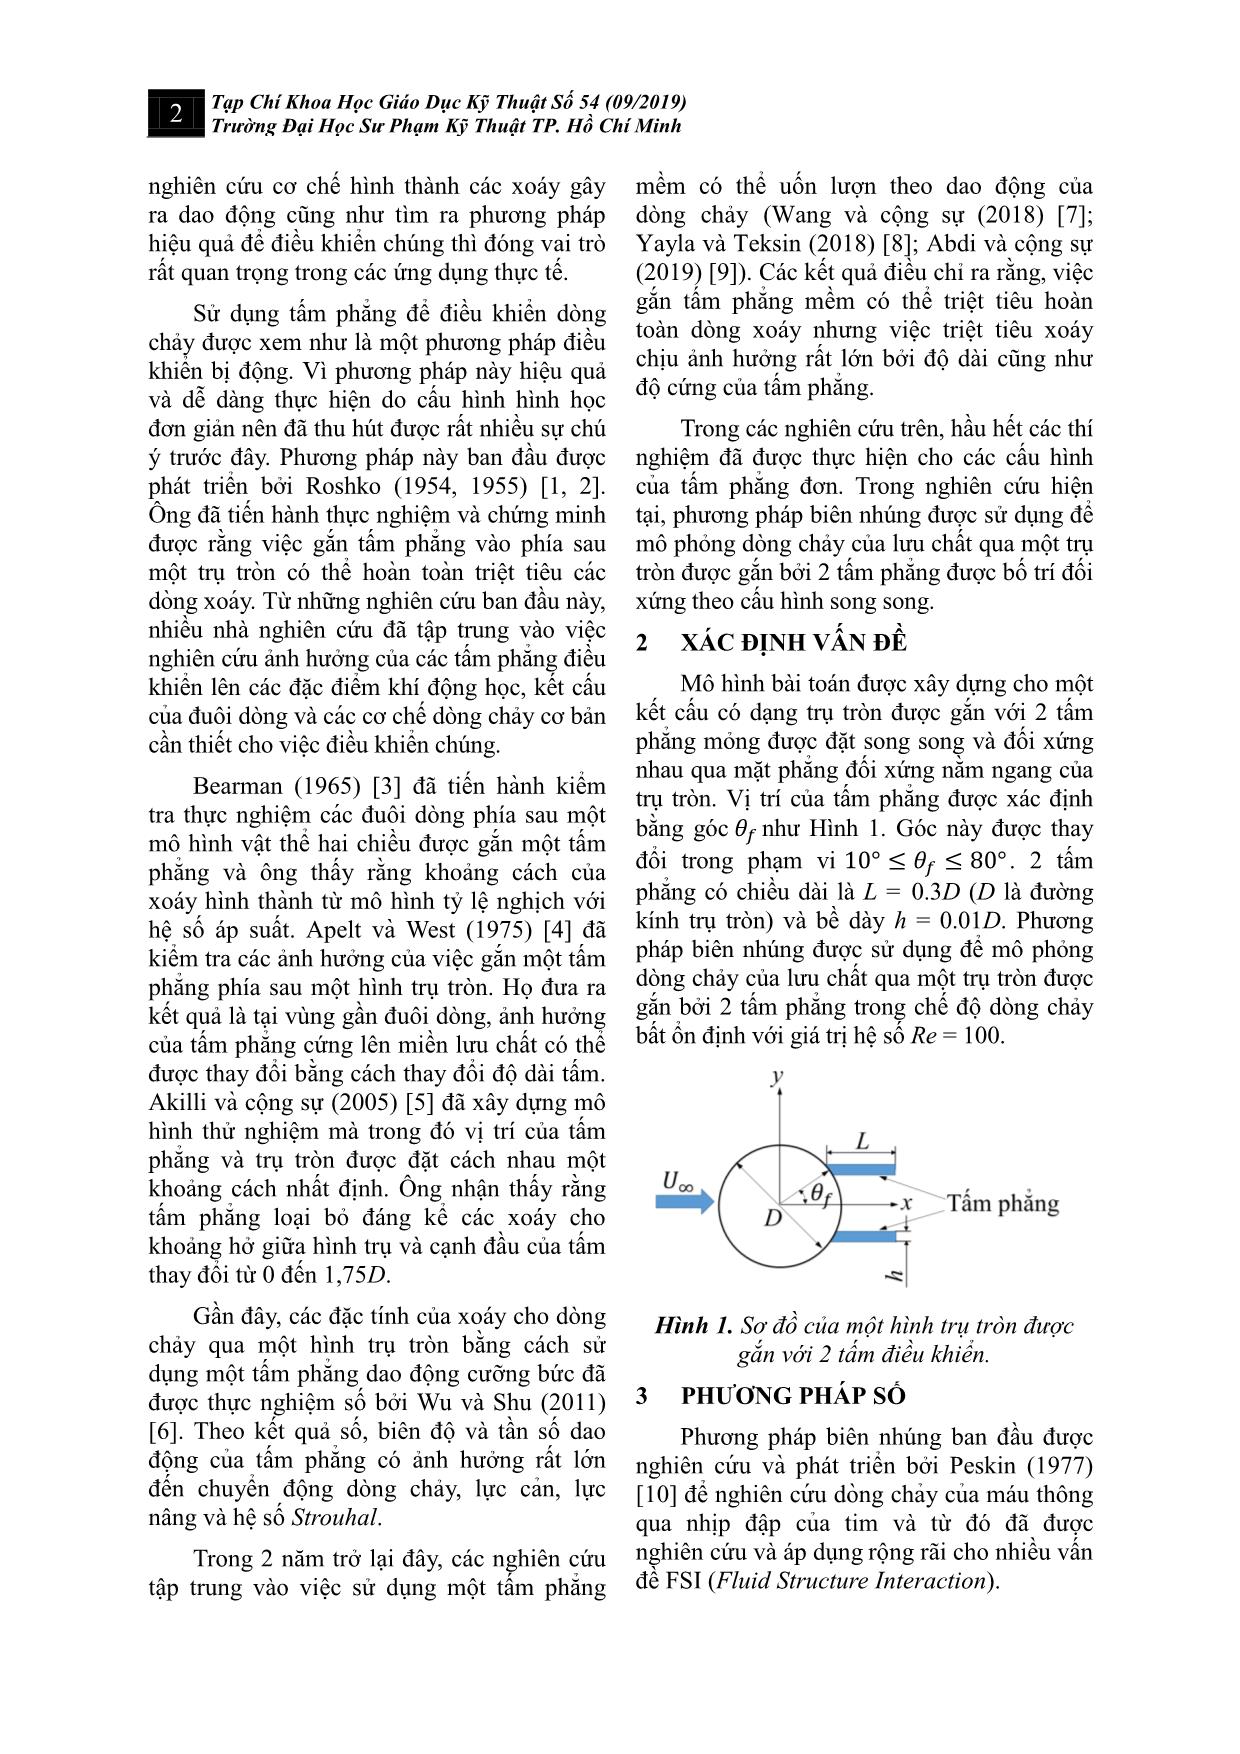 Mô phỏng số cho dòng chảy của lưu chất qua trụ tròn được gắn bởi 2 tấm phẳng trang 2